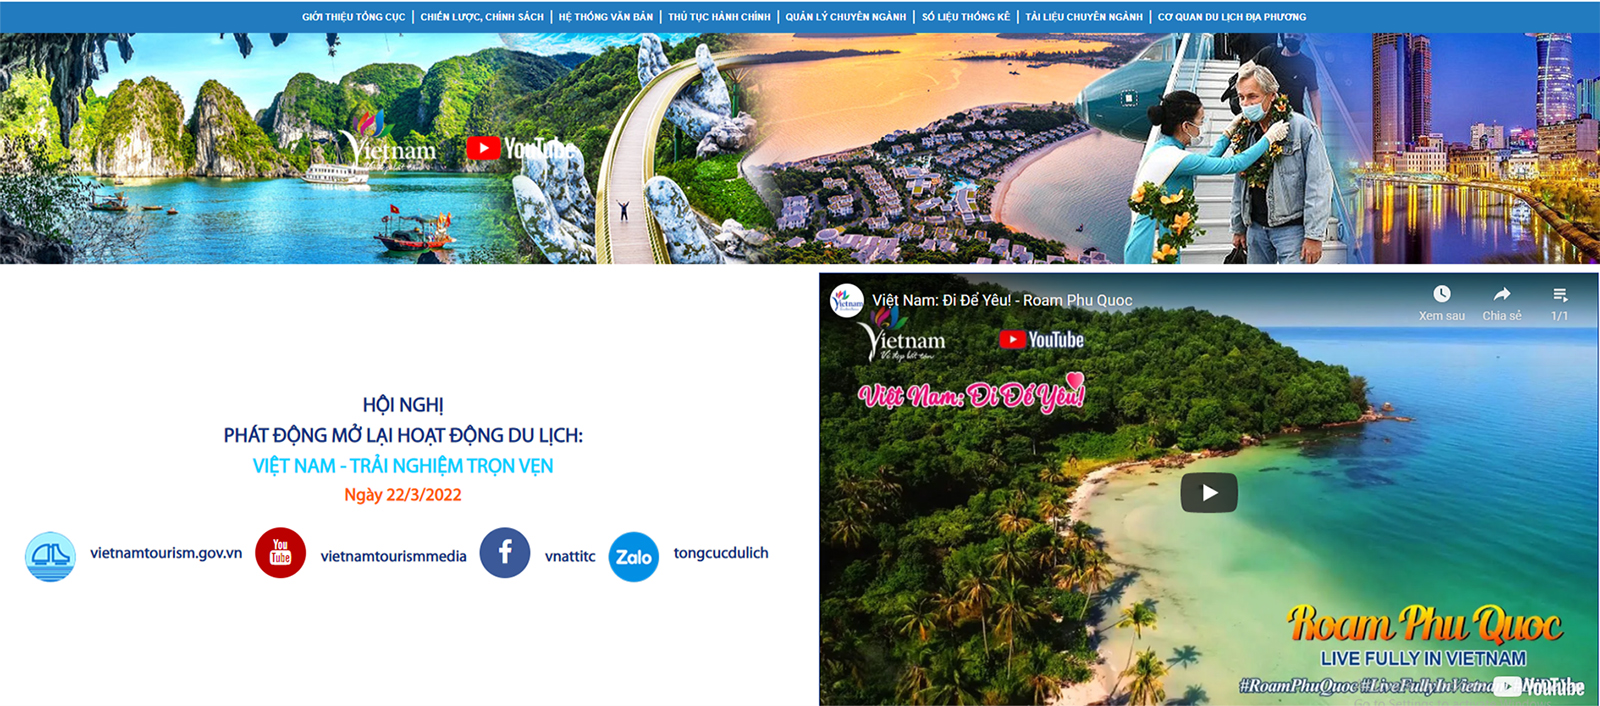 Hướng dẫn theo dõi trực tuyến Hội nghị “Phát động mở lại hoạt động du lịch” trên website và mạng xã hội của Tổng cục Du lịch